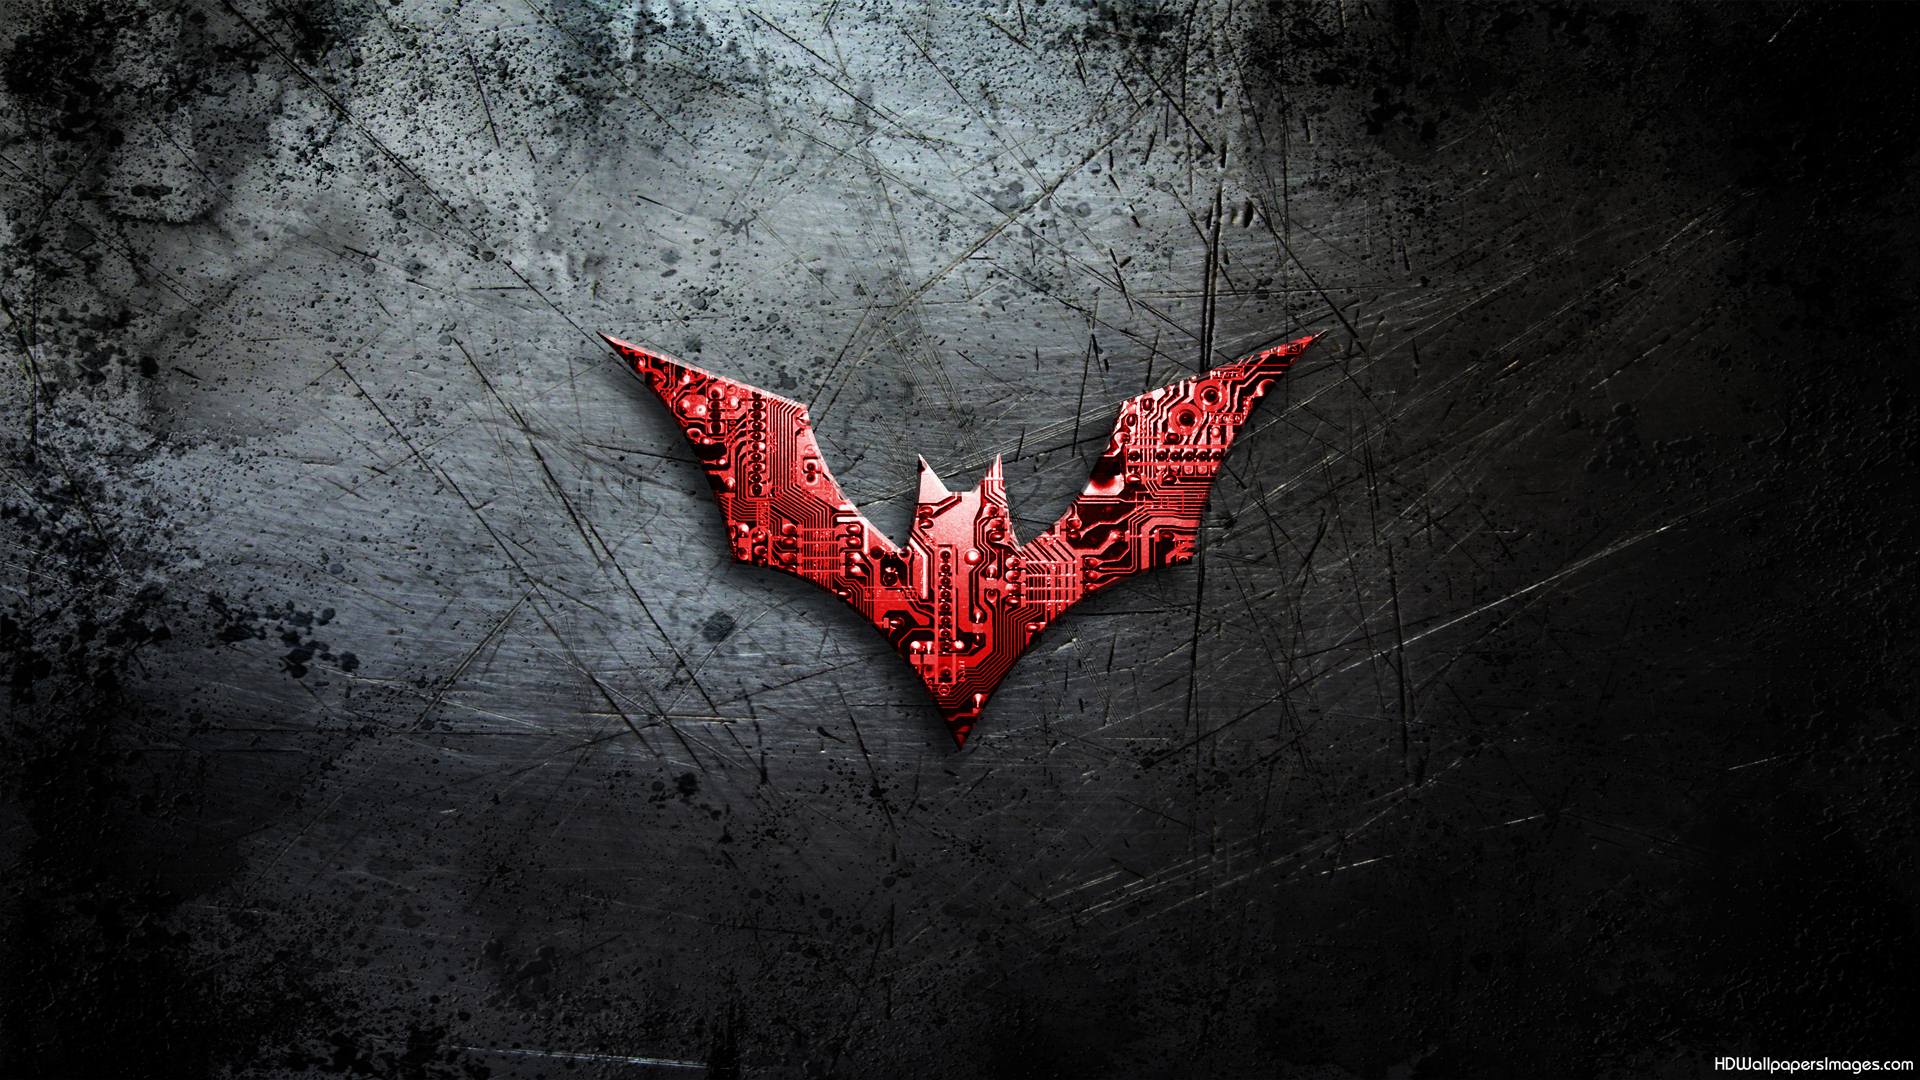 Fondo de pantalla de logotipo de Batman gratis, descargar imágenes prediseñadas gratis, imágenes prediseñadas gratis en